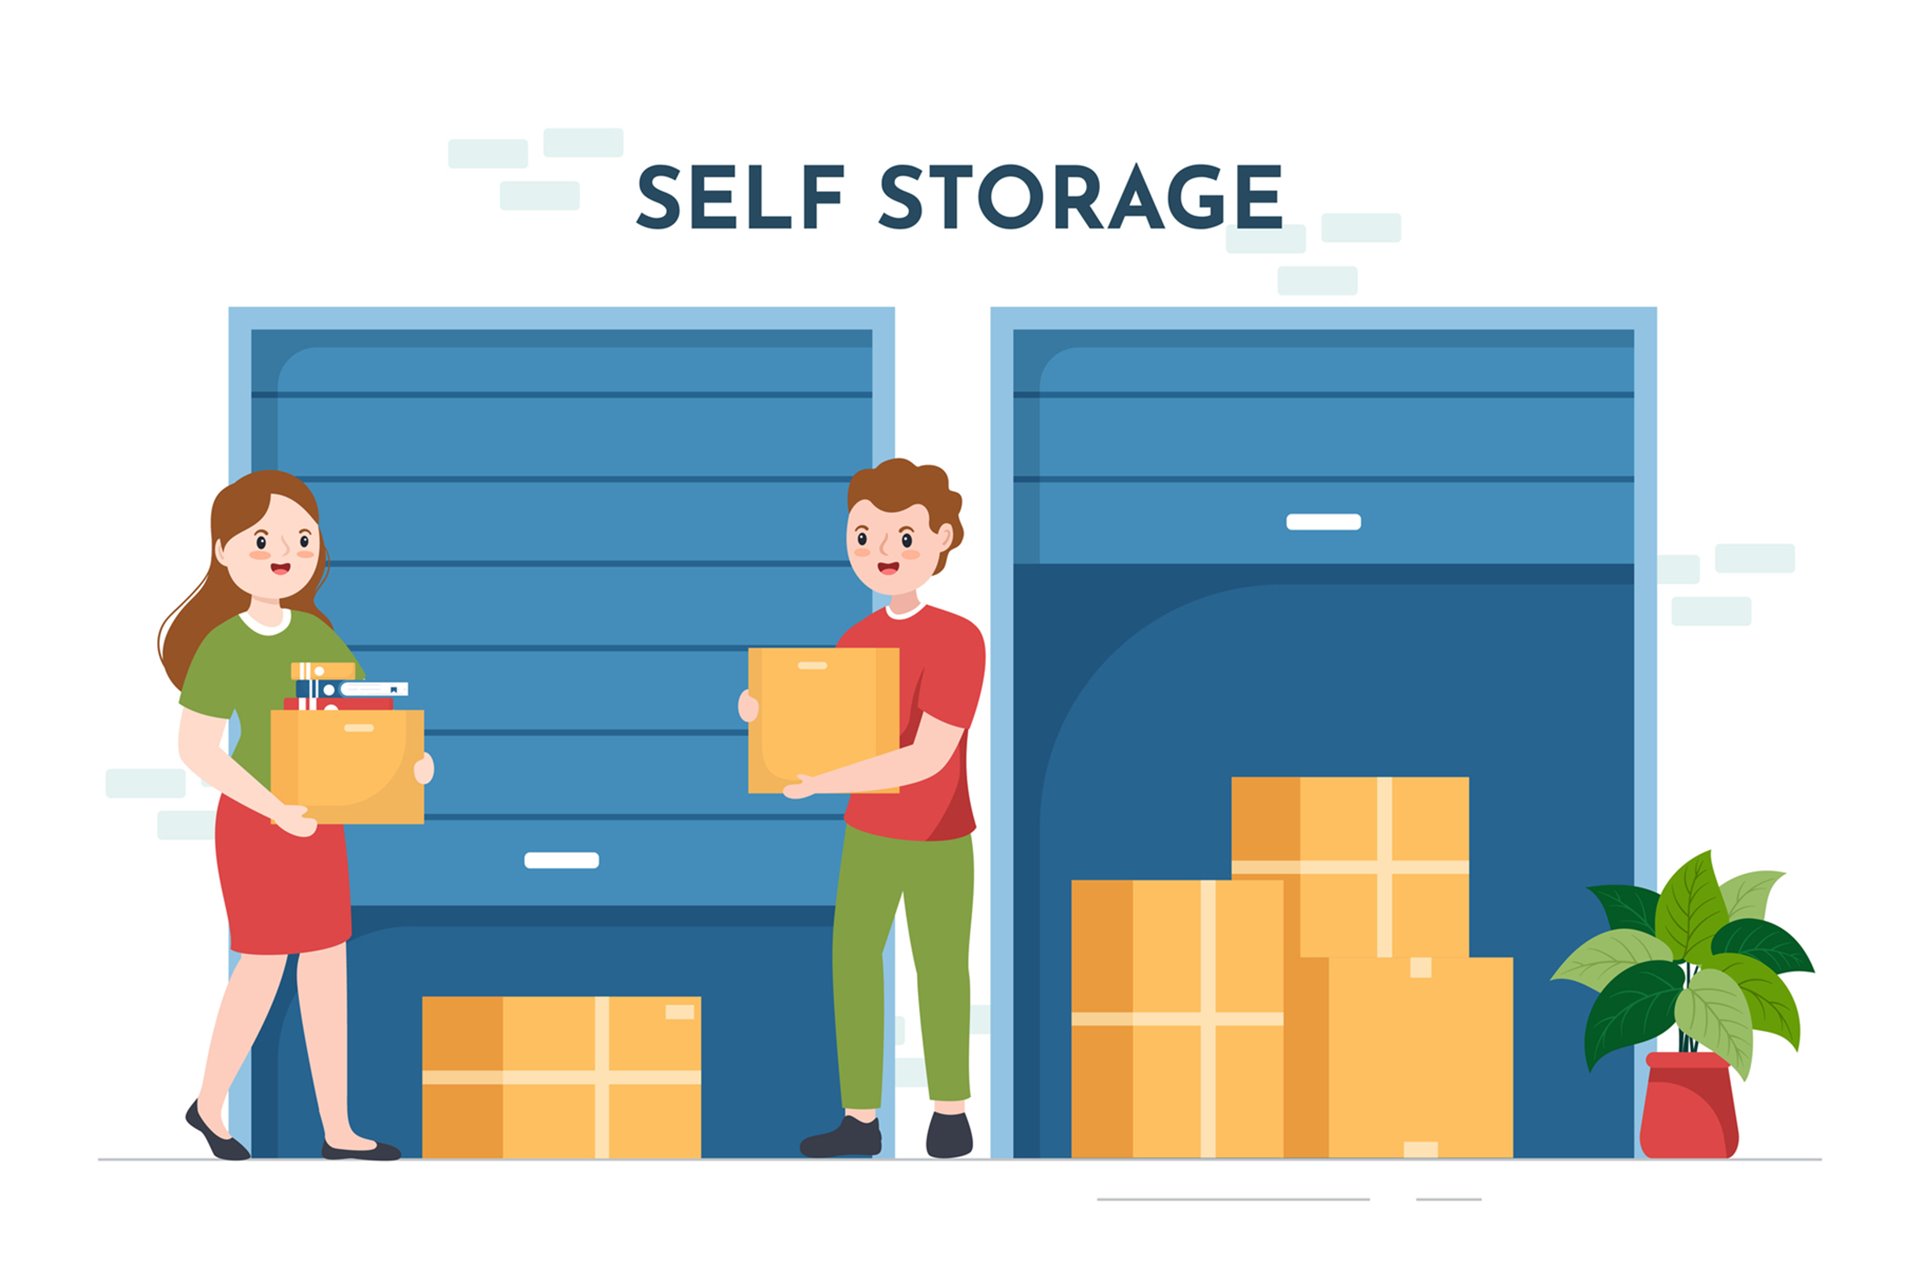 Aluguel de Self Storage em São Paulo – Quanto custa e como contratar?